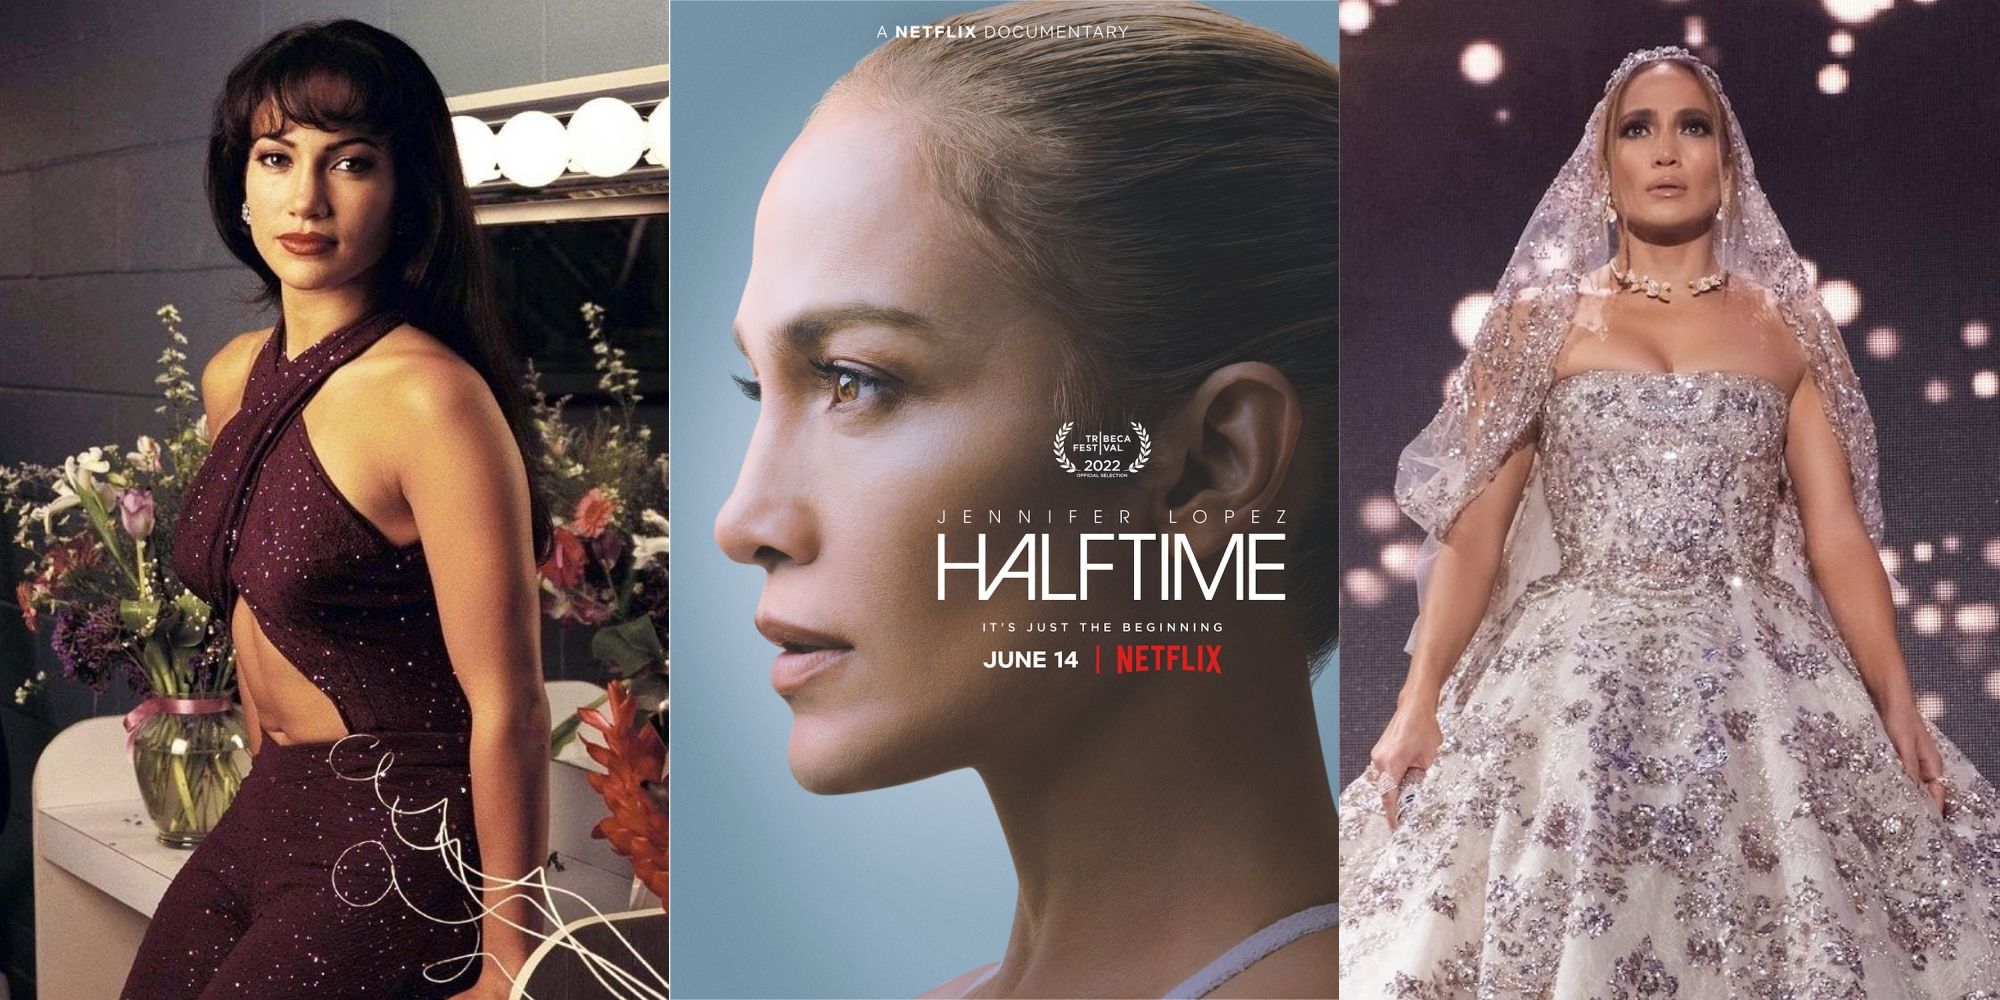 Las 10 mejores películas de Jennifer Lopez, clasificadas según Metacritic